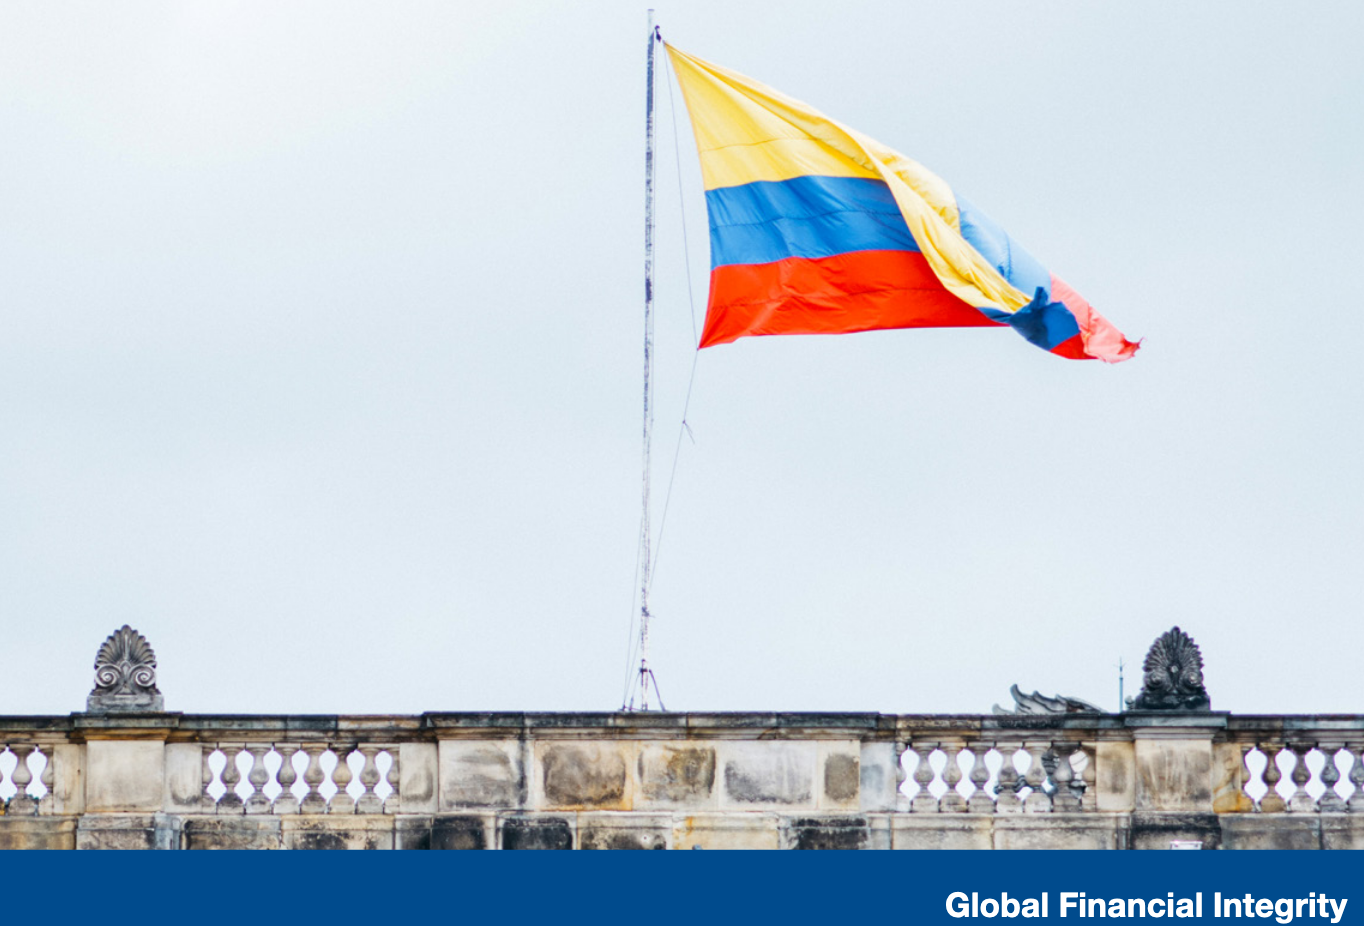 2020-01-04-Illicit Financial Flows & Colombia-EN-IMAGEM PRINCIPAL